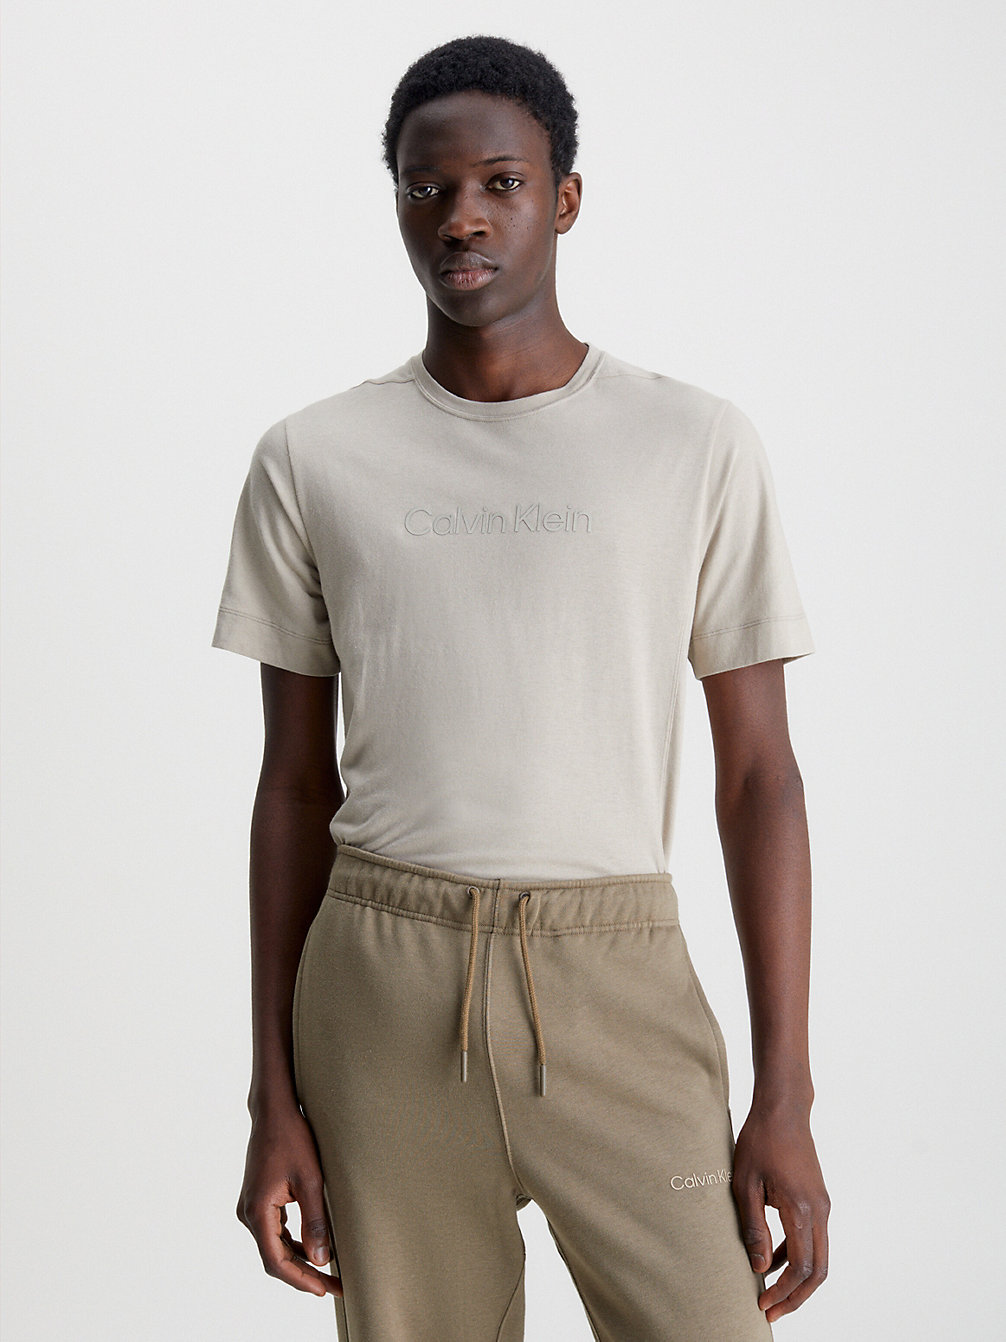 WINTER LINEN > Gym-T-Shirt > undefined Herren - Calvin Klein